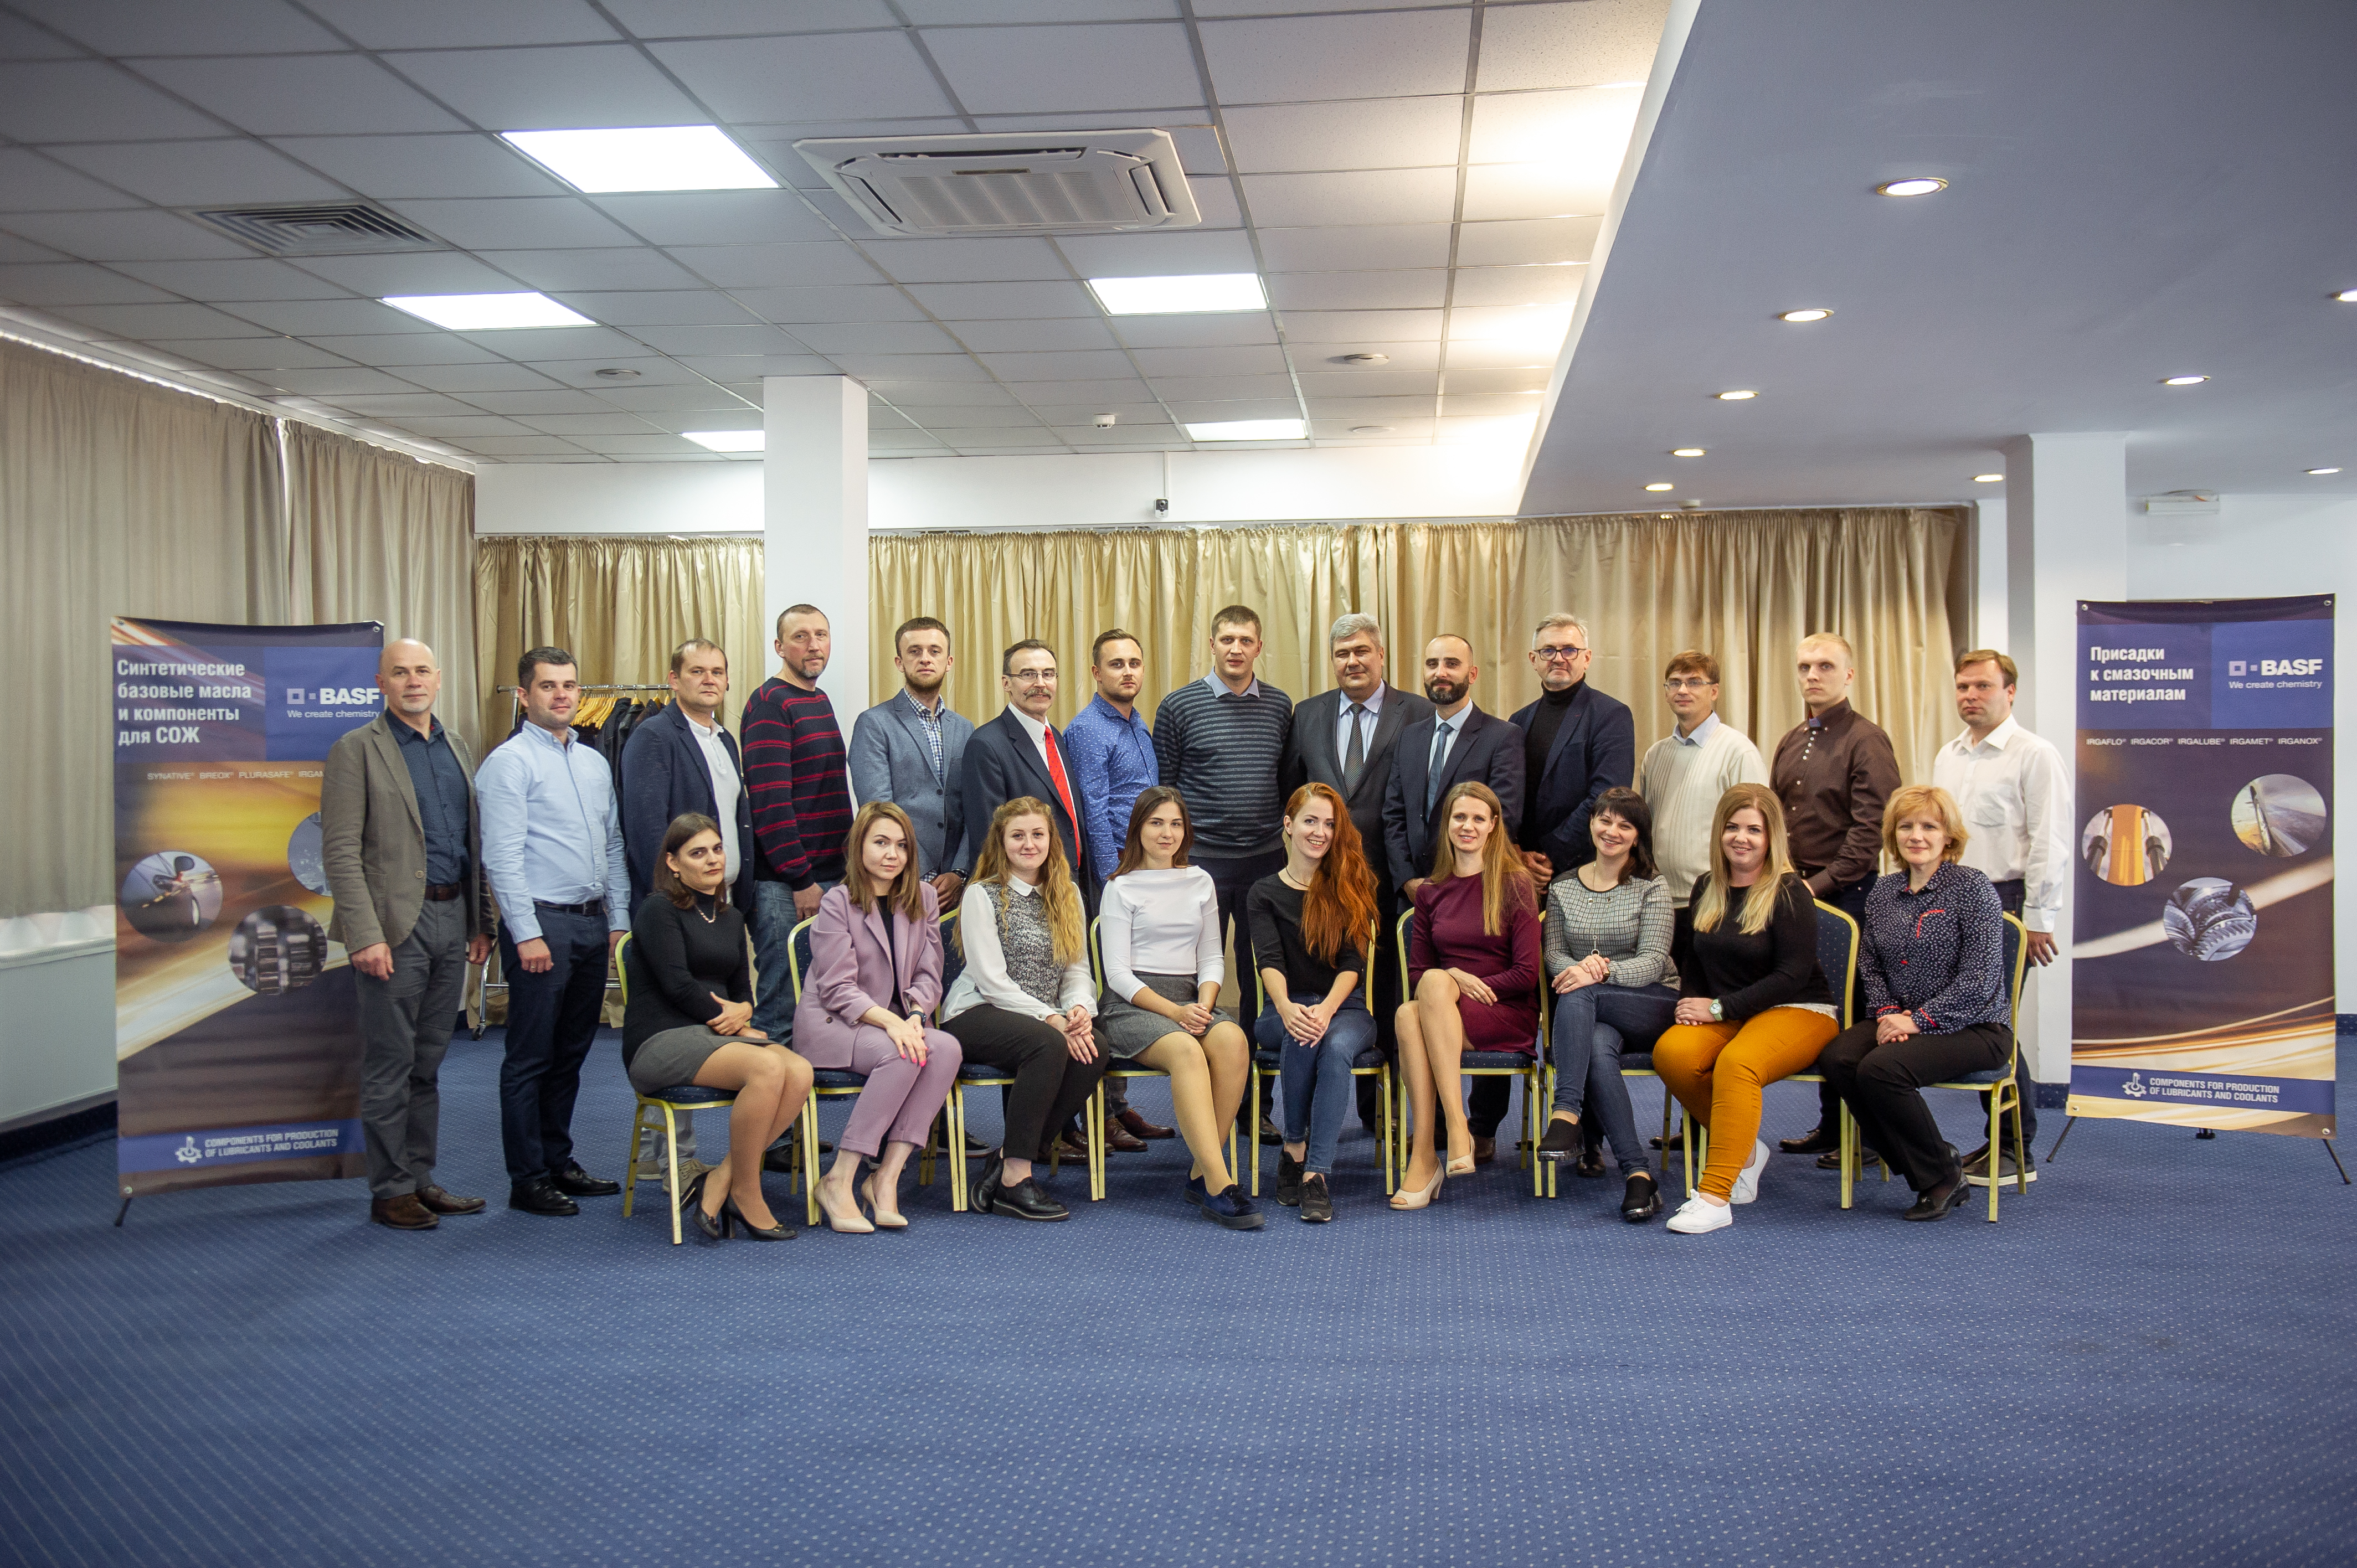 Фахівці ТОВ "СП Юкойл" взяли участь у галузевій конференції під патронатом концерну BASF